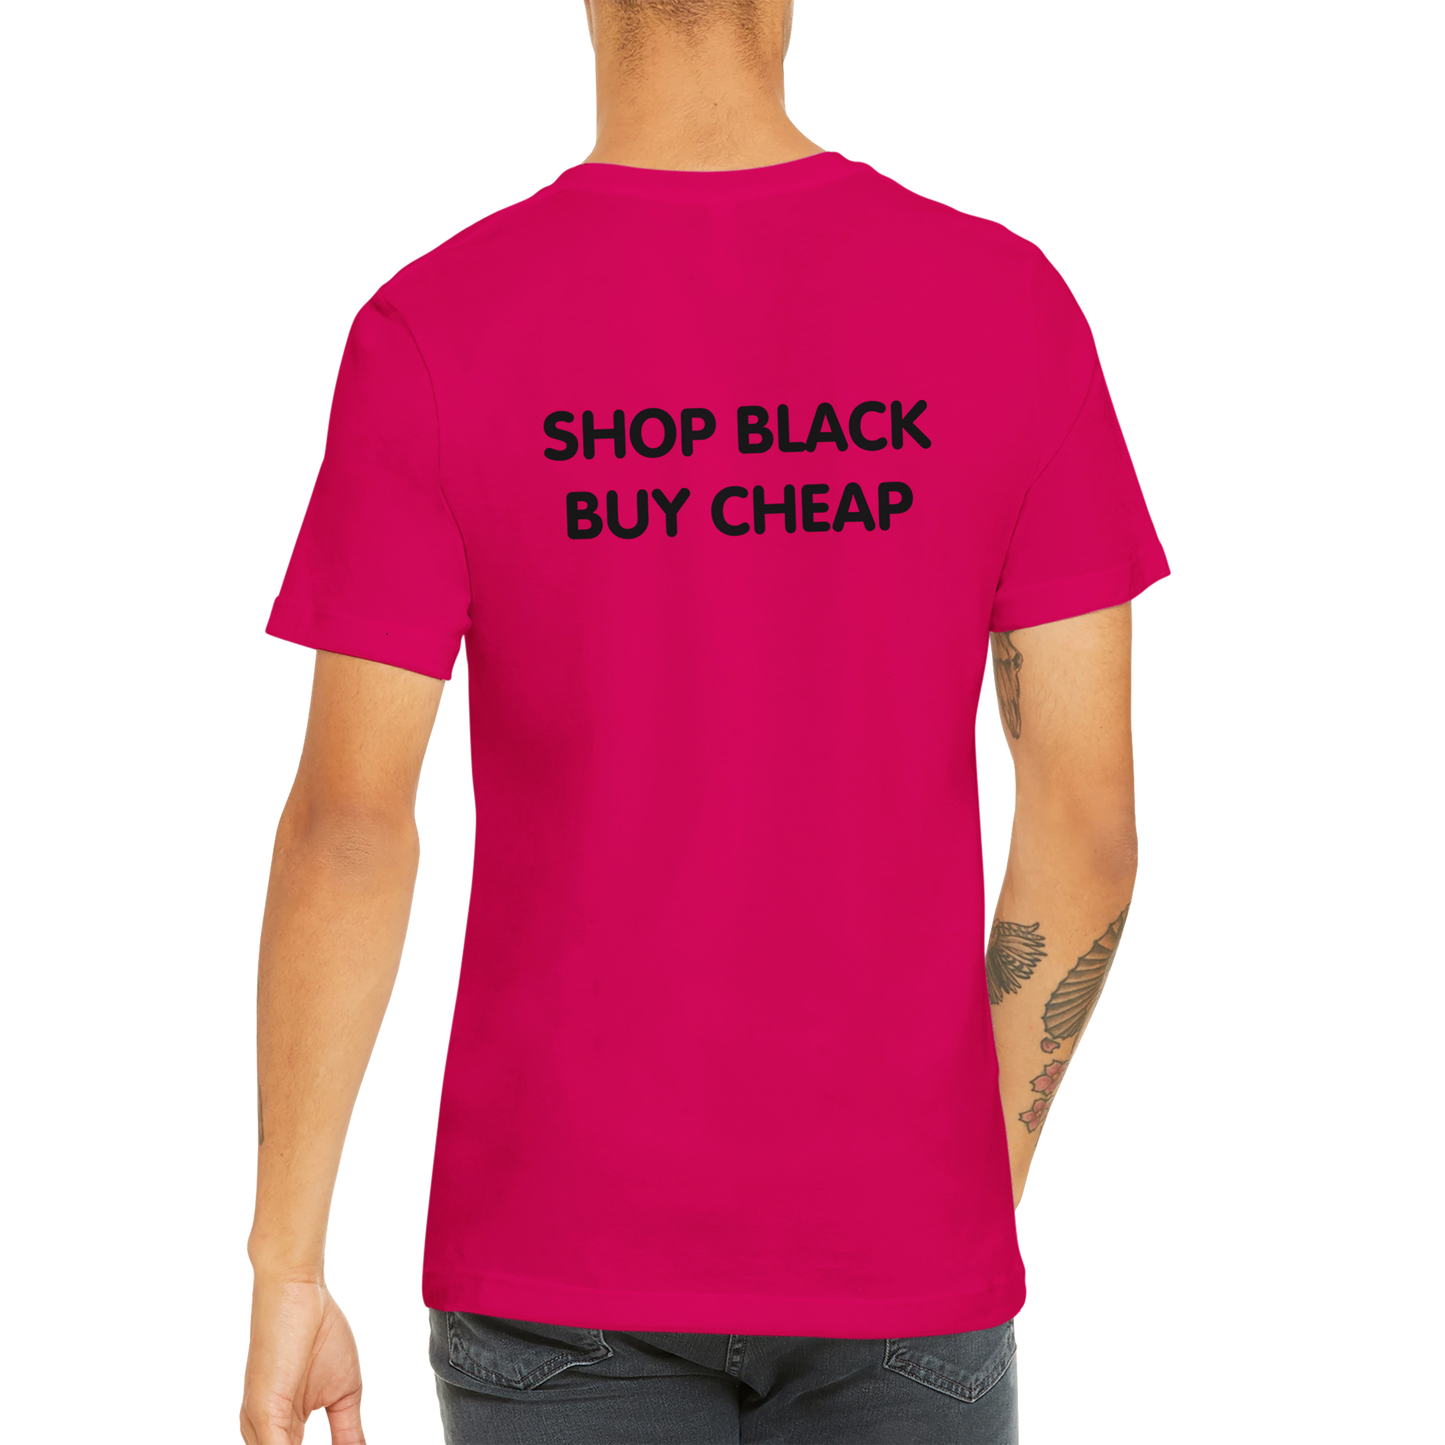 SHOP BLACK BUY CHEAP - Premium Unisex Crewneck T-shirt